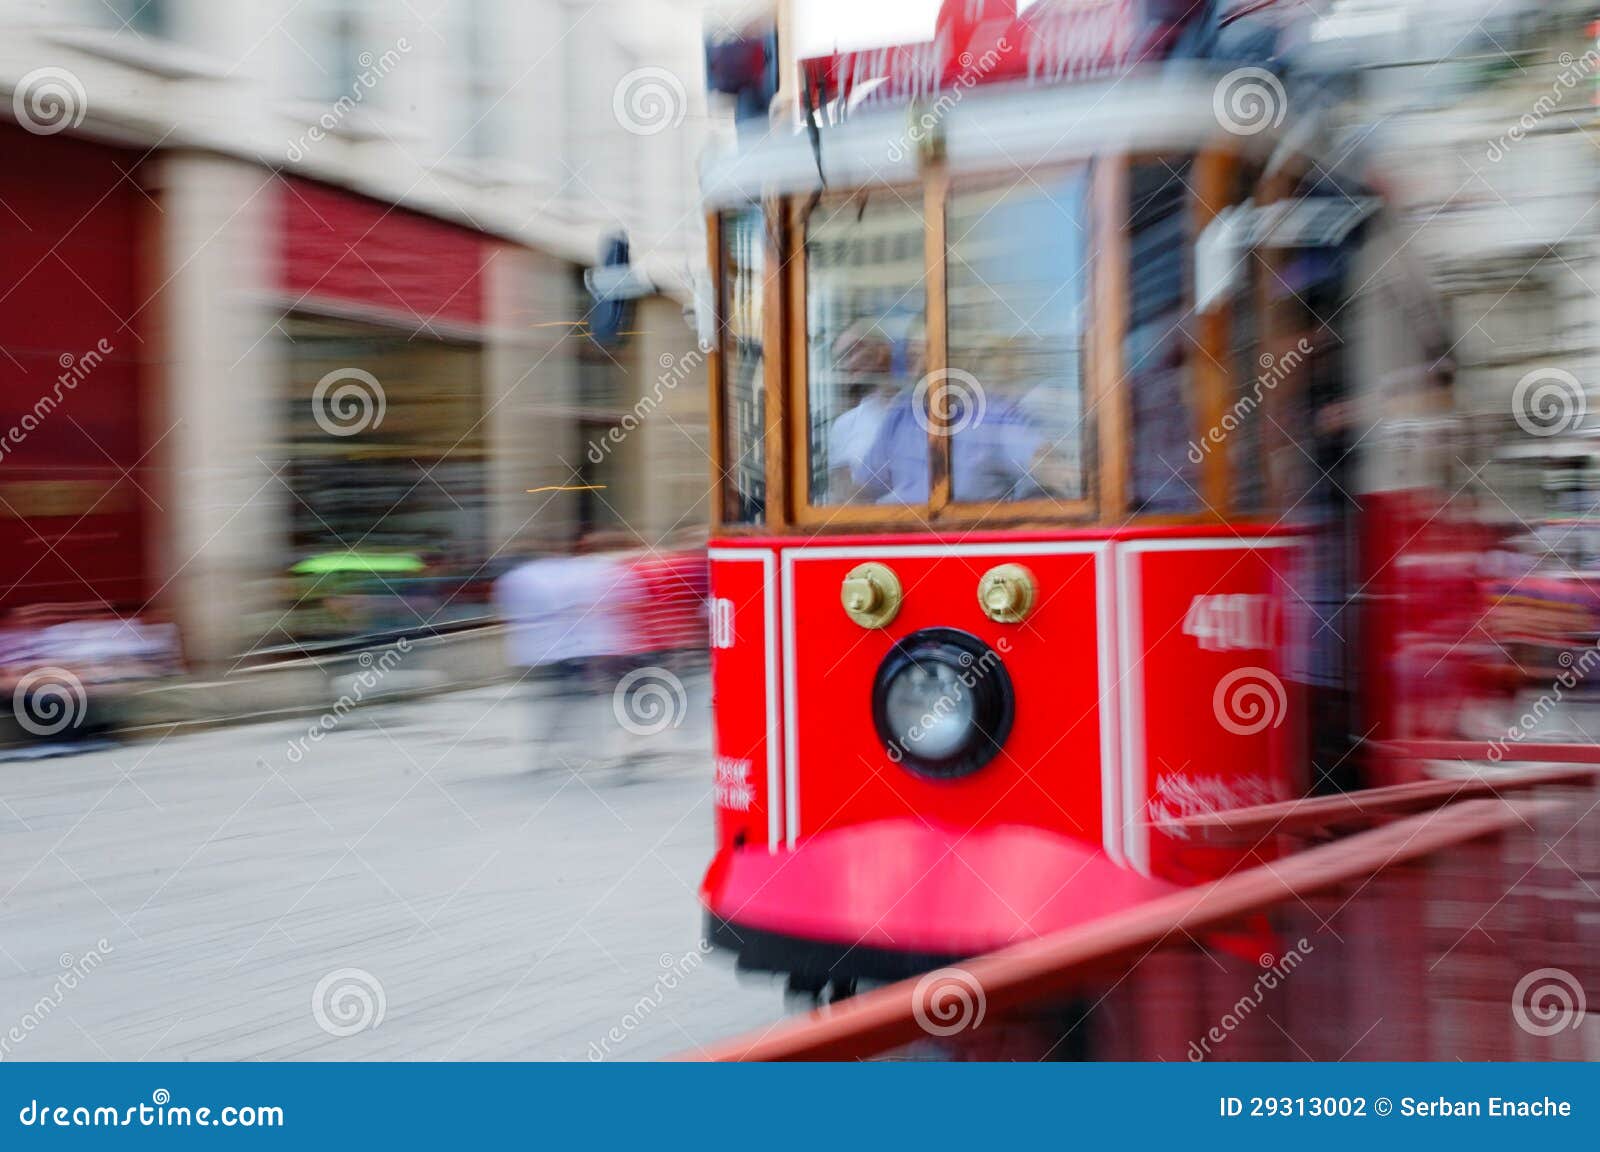 tram in istanbul